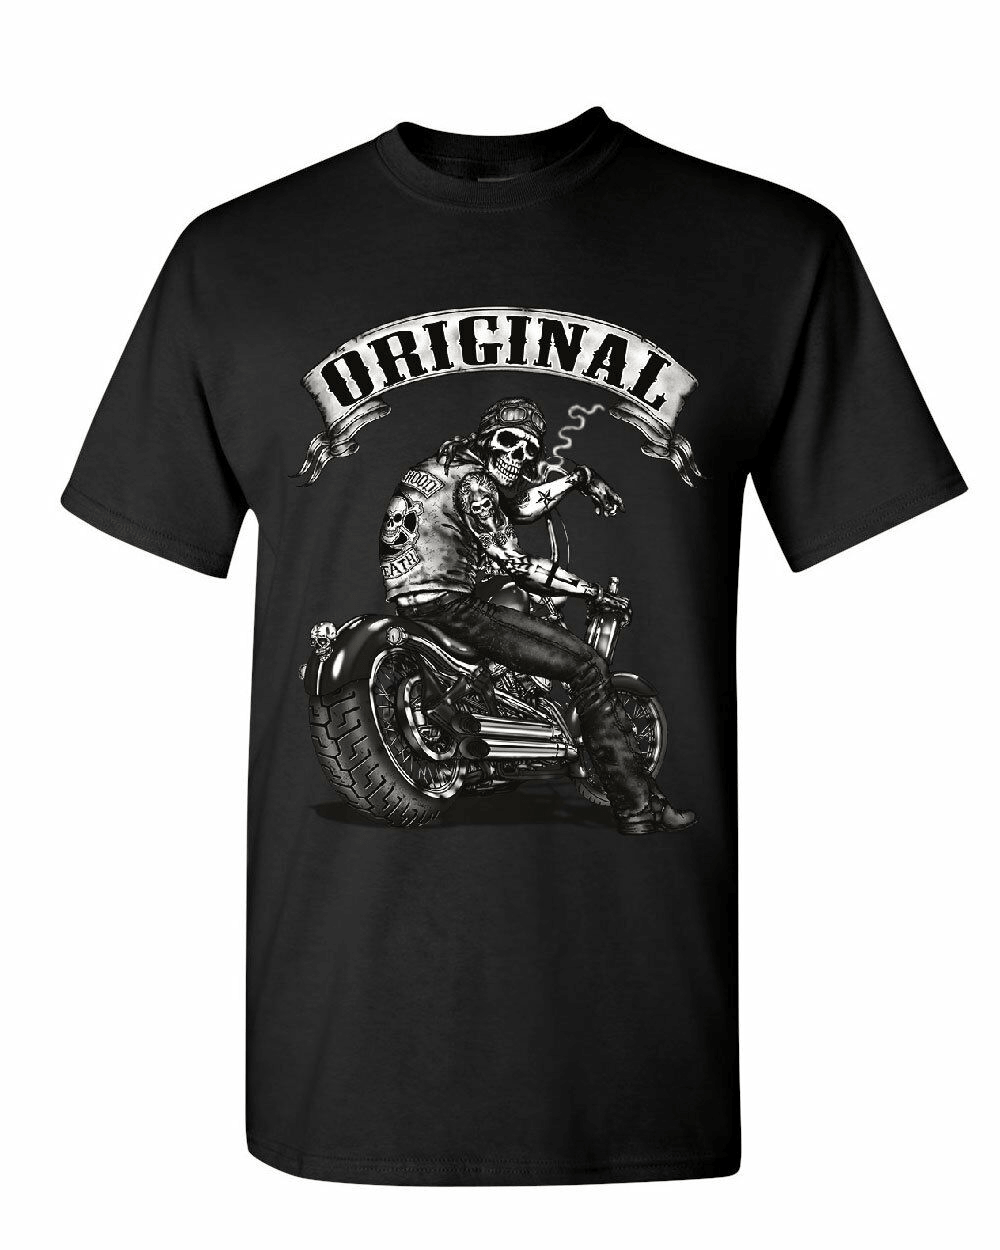 Tee shirt moto vintage pour les passionnés et les anciens du bitume